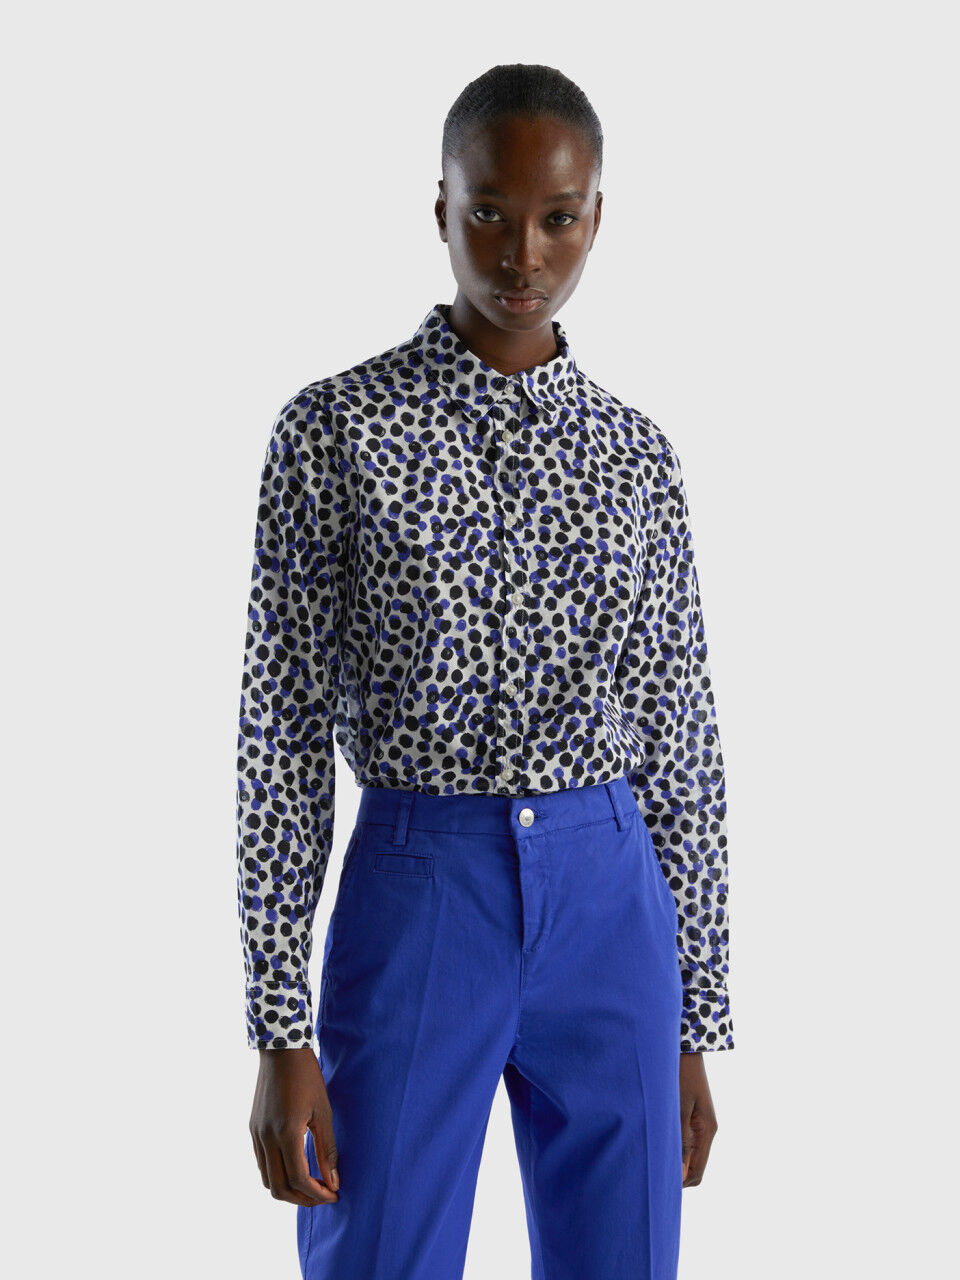 Abastecer Pence tema Camisas Mujer y Blusas Nueva Colección 2023 | Benetton